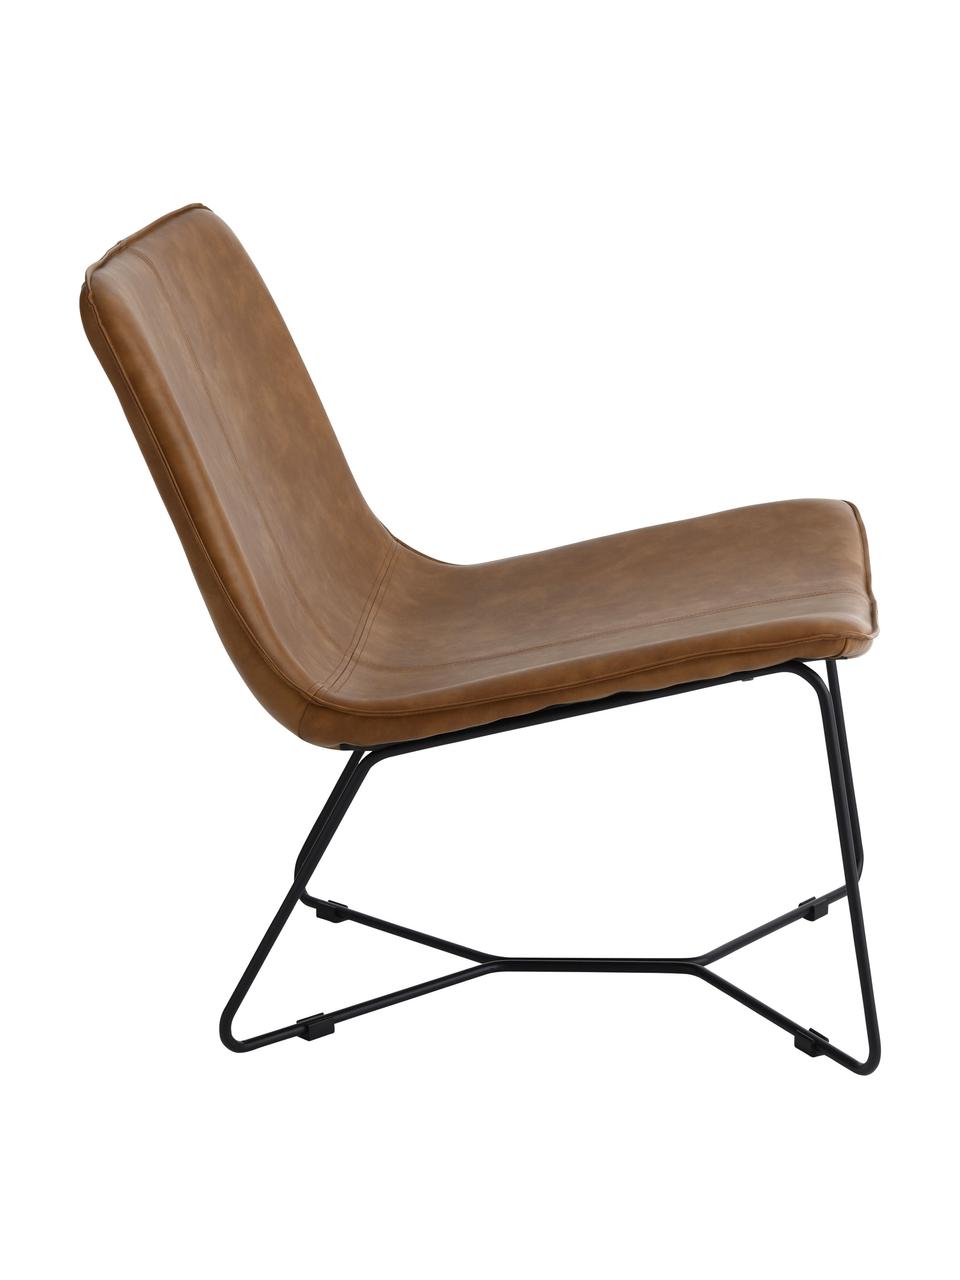 Kunstleren lounge fauteuil Barrel in bruin, Bekleding: 100% kunstleer, Frame: gecoat metaal, Kunstleer bruin, zwart, B 68 cm x D 64 cm